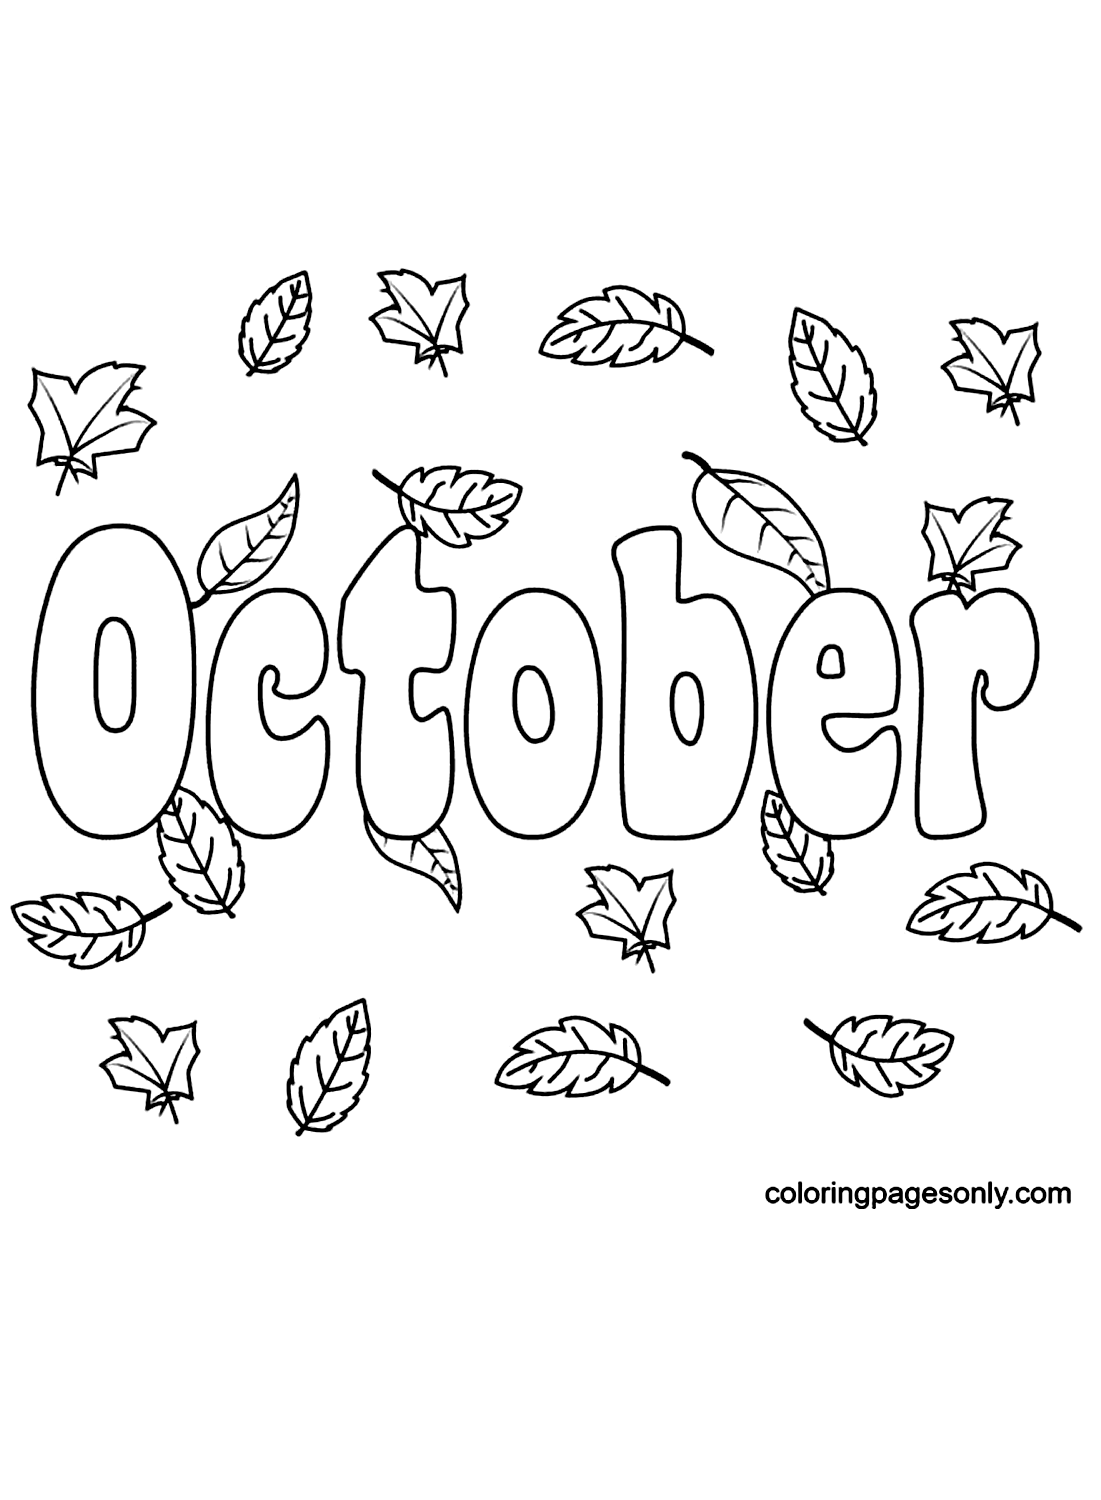 Октябрь с осенними листьями из октября